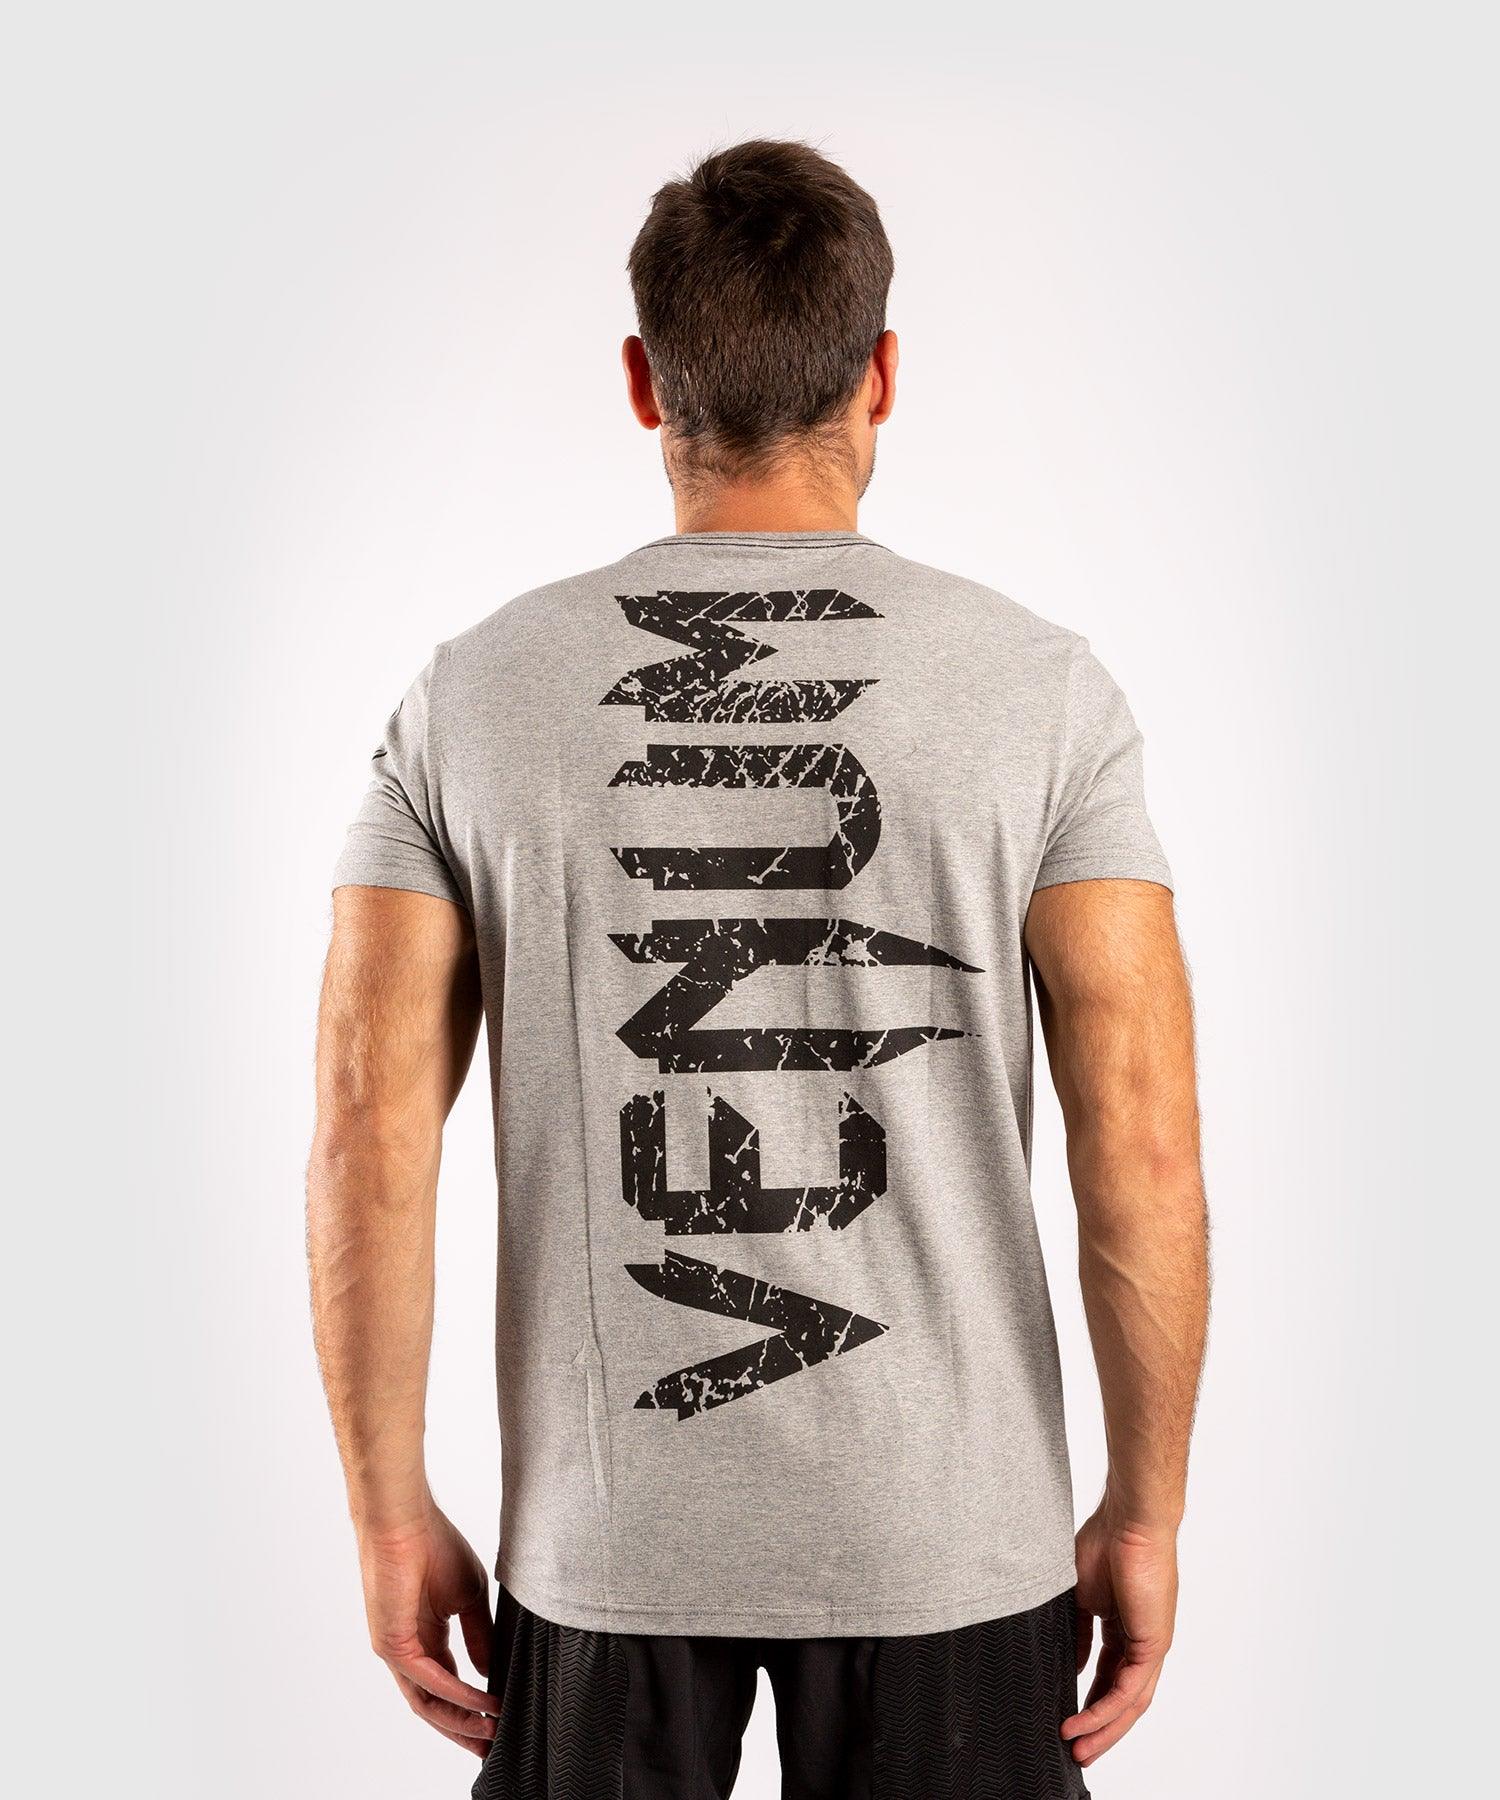 Venum Giant T-shirt - Grey/Black Picture 2